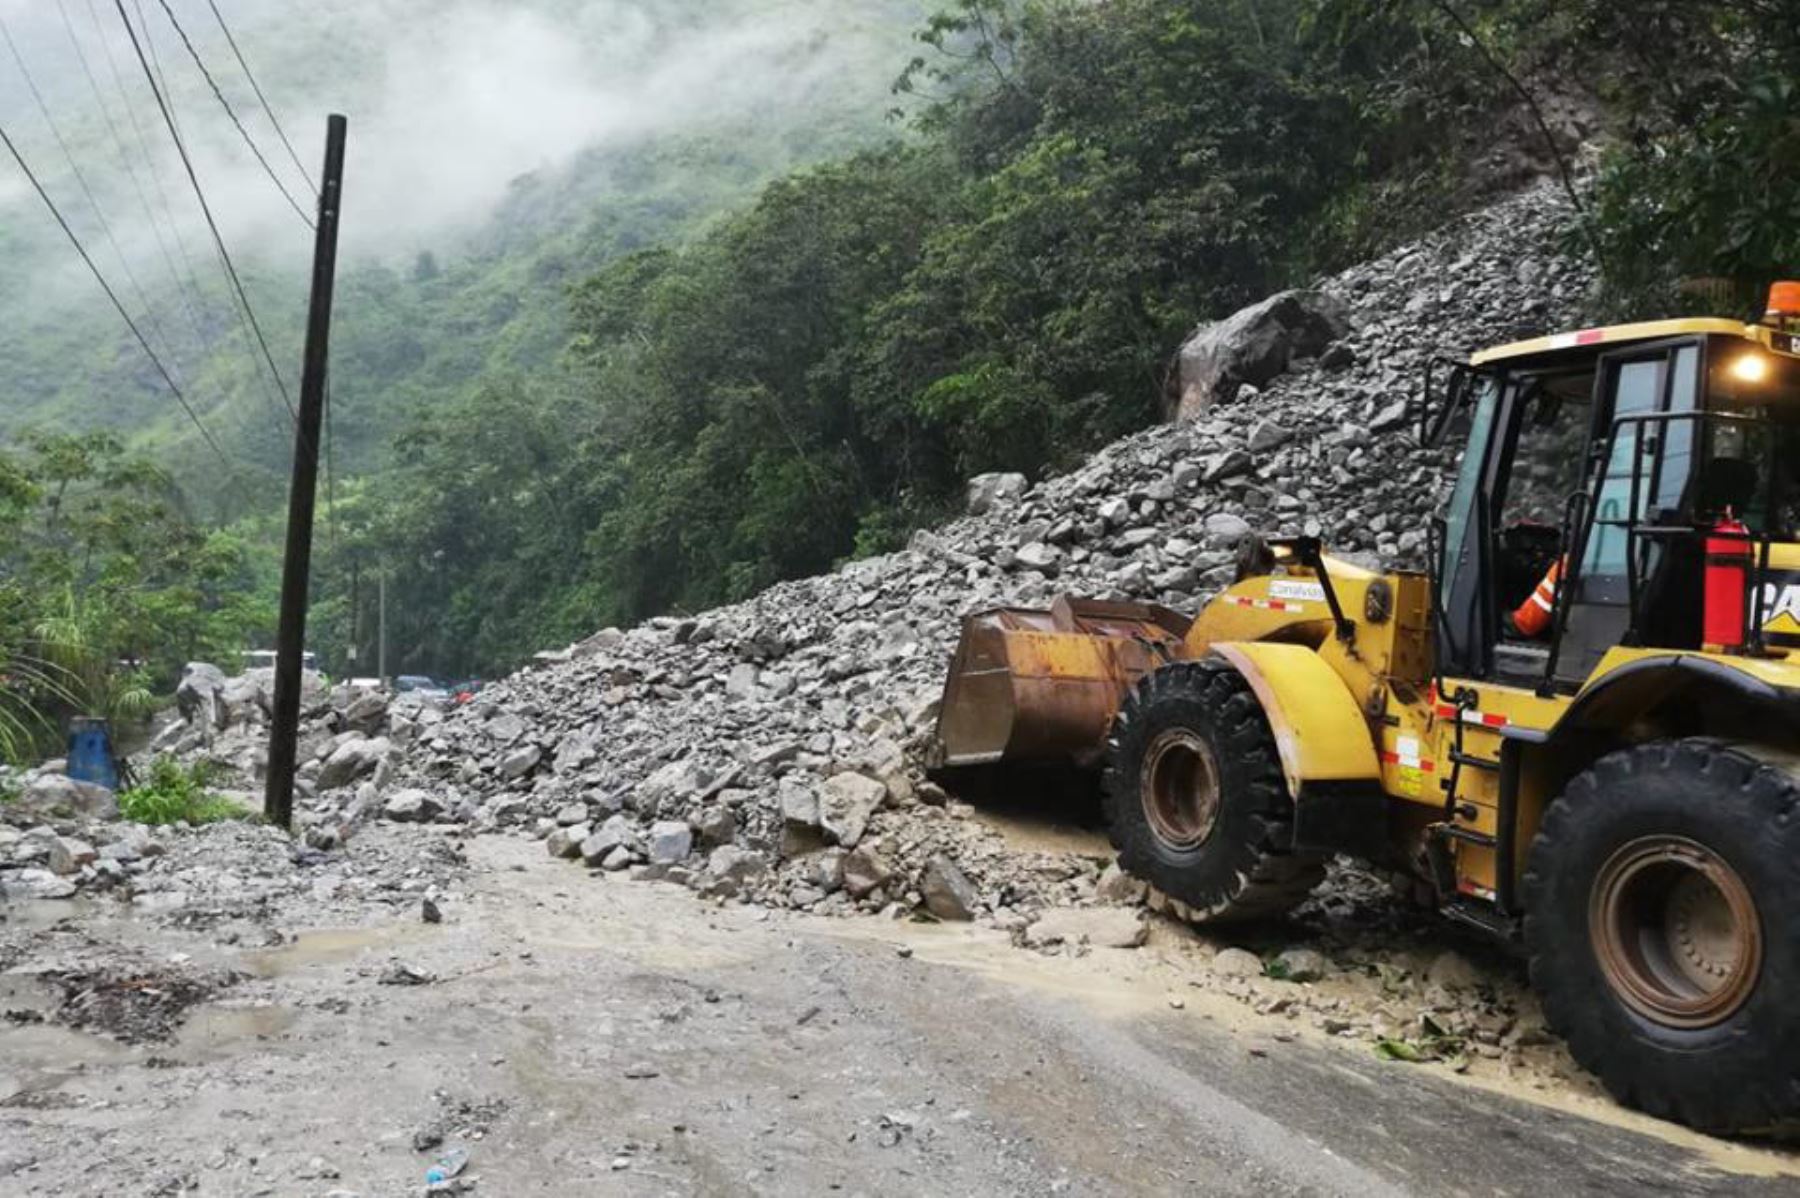 El Ejecutivo declaró el estado de emergencia en la provincia de Chanchamayo, en el distrito de Palca de la provincia de Tarma, y en el distrito de Ulcumayo de la provincia de Junín, debido a los desastres provocados por las intensas lluvias que se registran en esa parte del país. ANDINA/Archivo